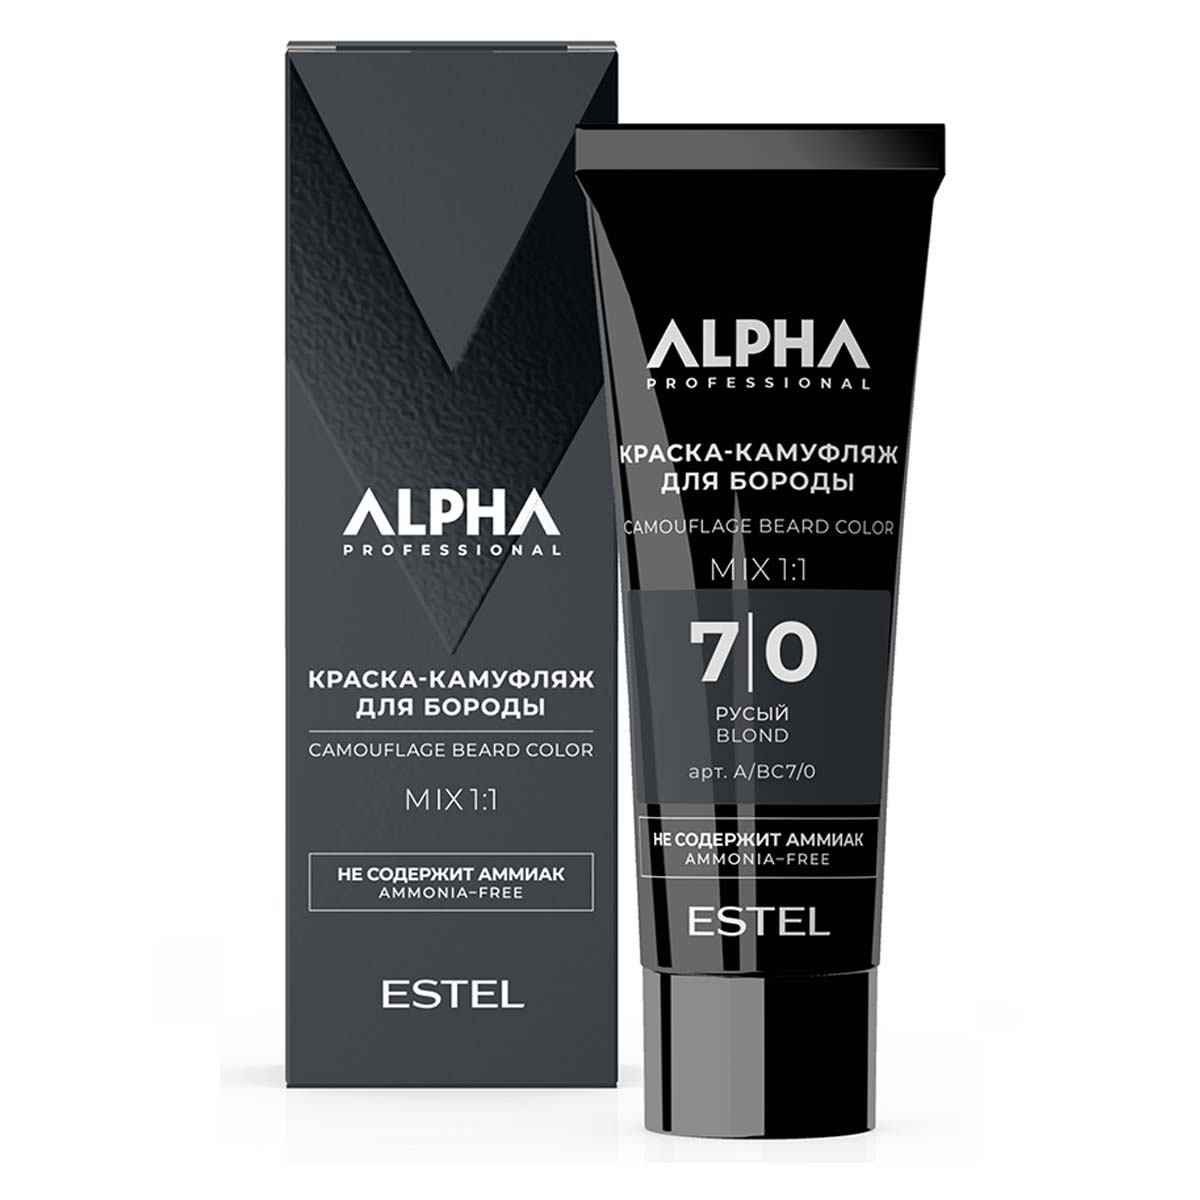 Крем-камуфляж для окрашивания бороды ESTEL PROFESSIONAL Alpha Homme 7.0 русый 40 мл крем перед бритьем pre shave alpha homme pro